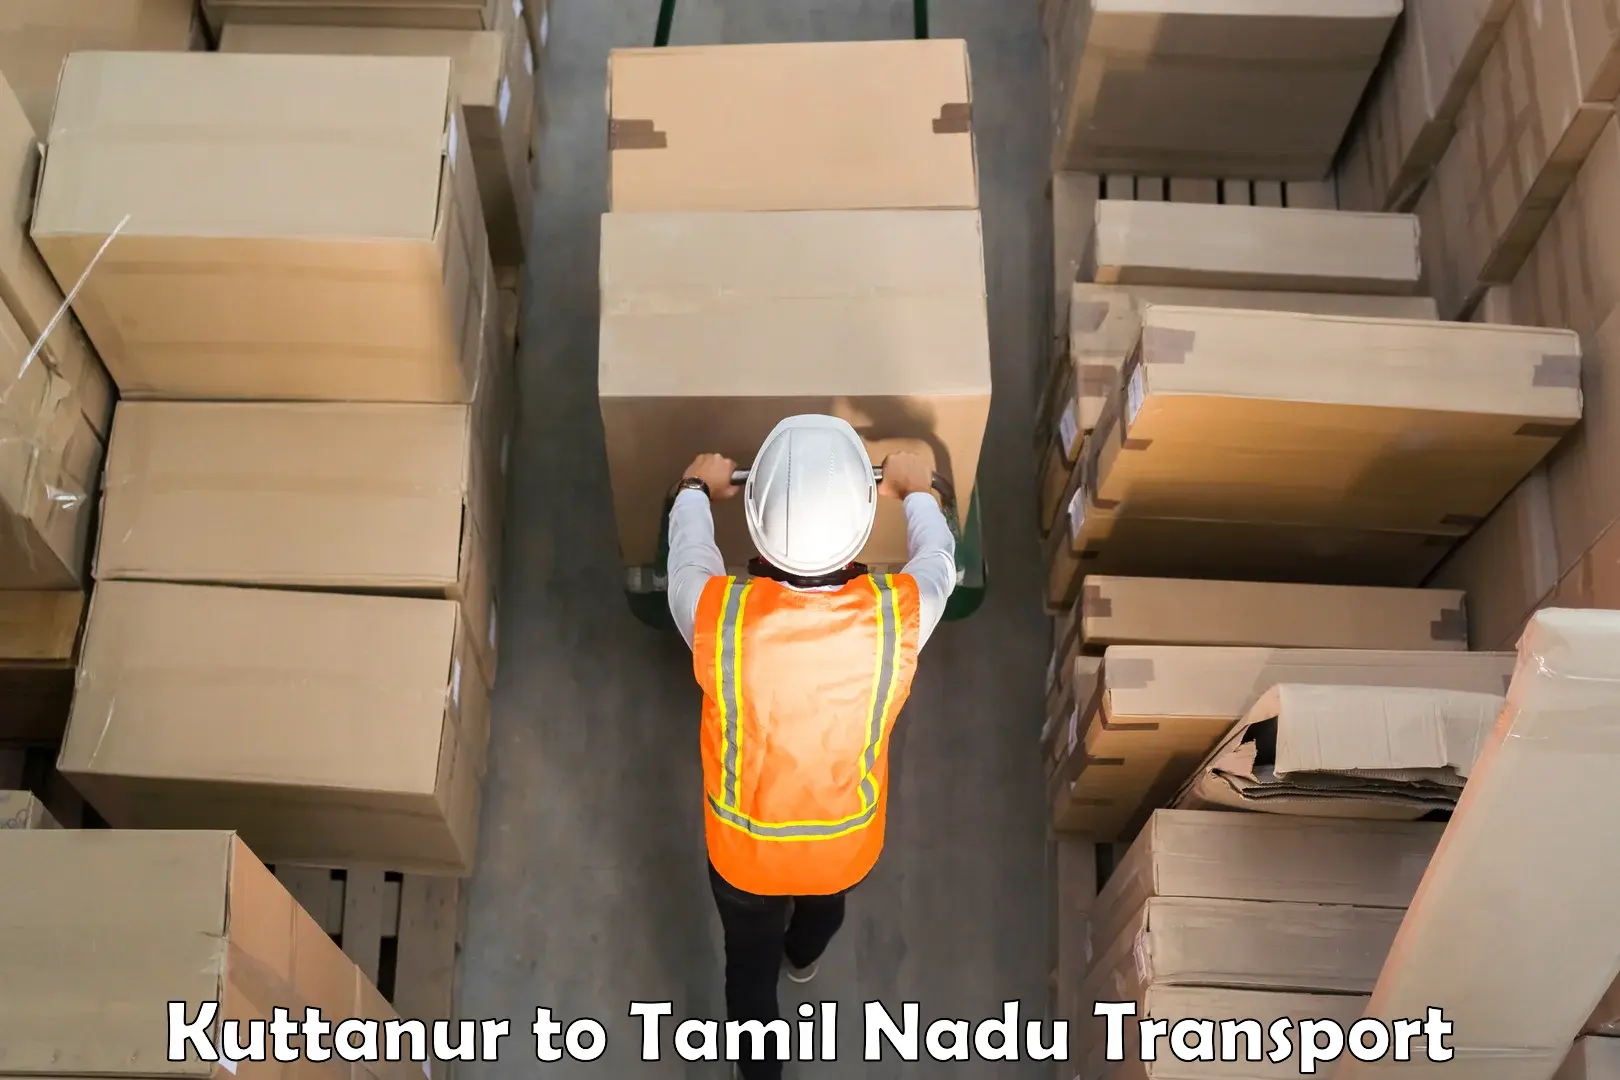 Shipping services Kuttanur to Kodaikanal